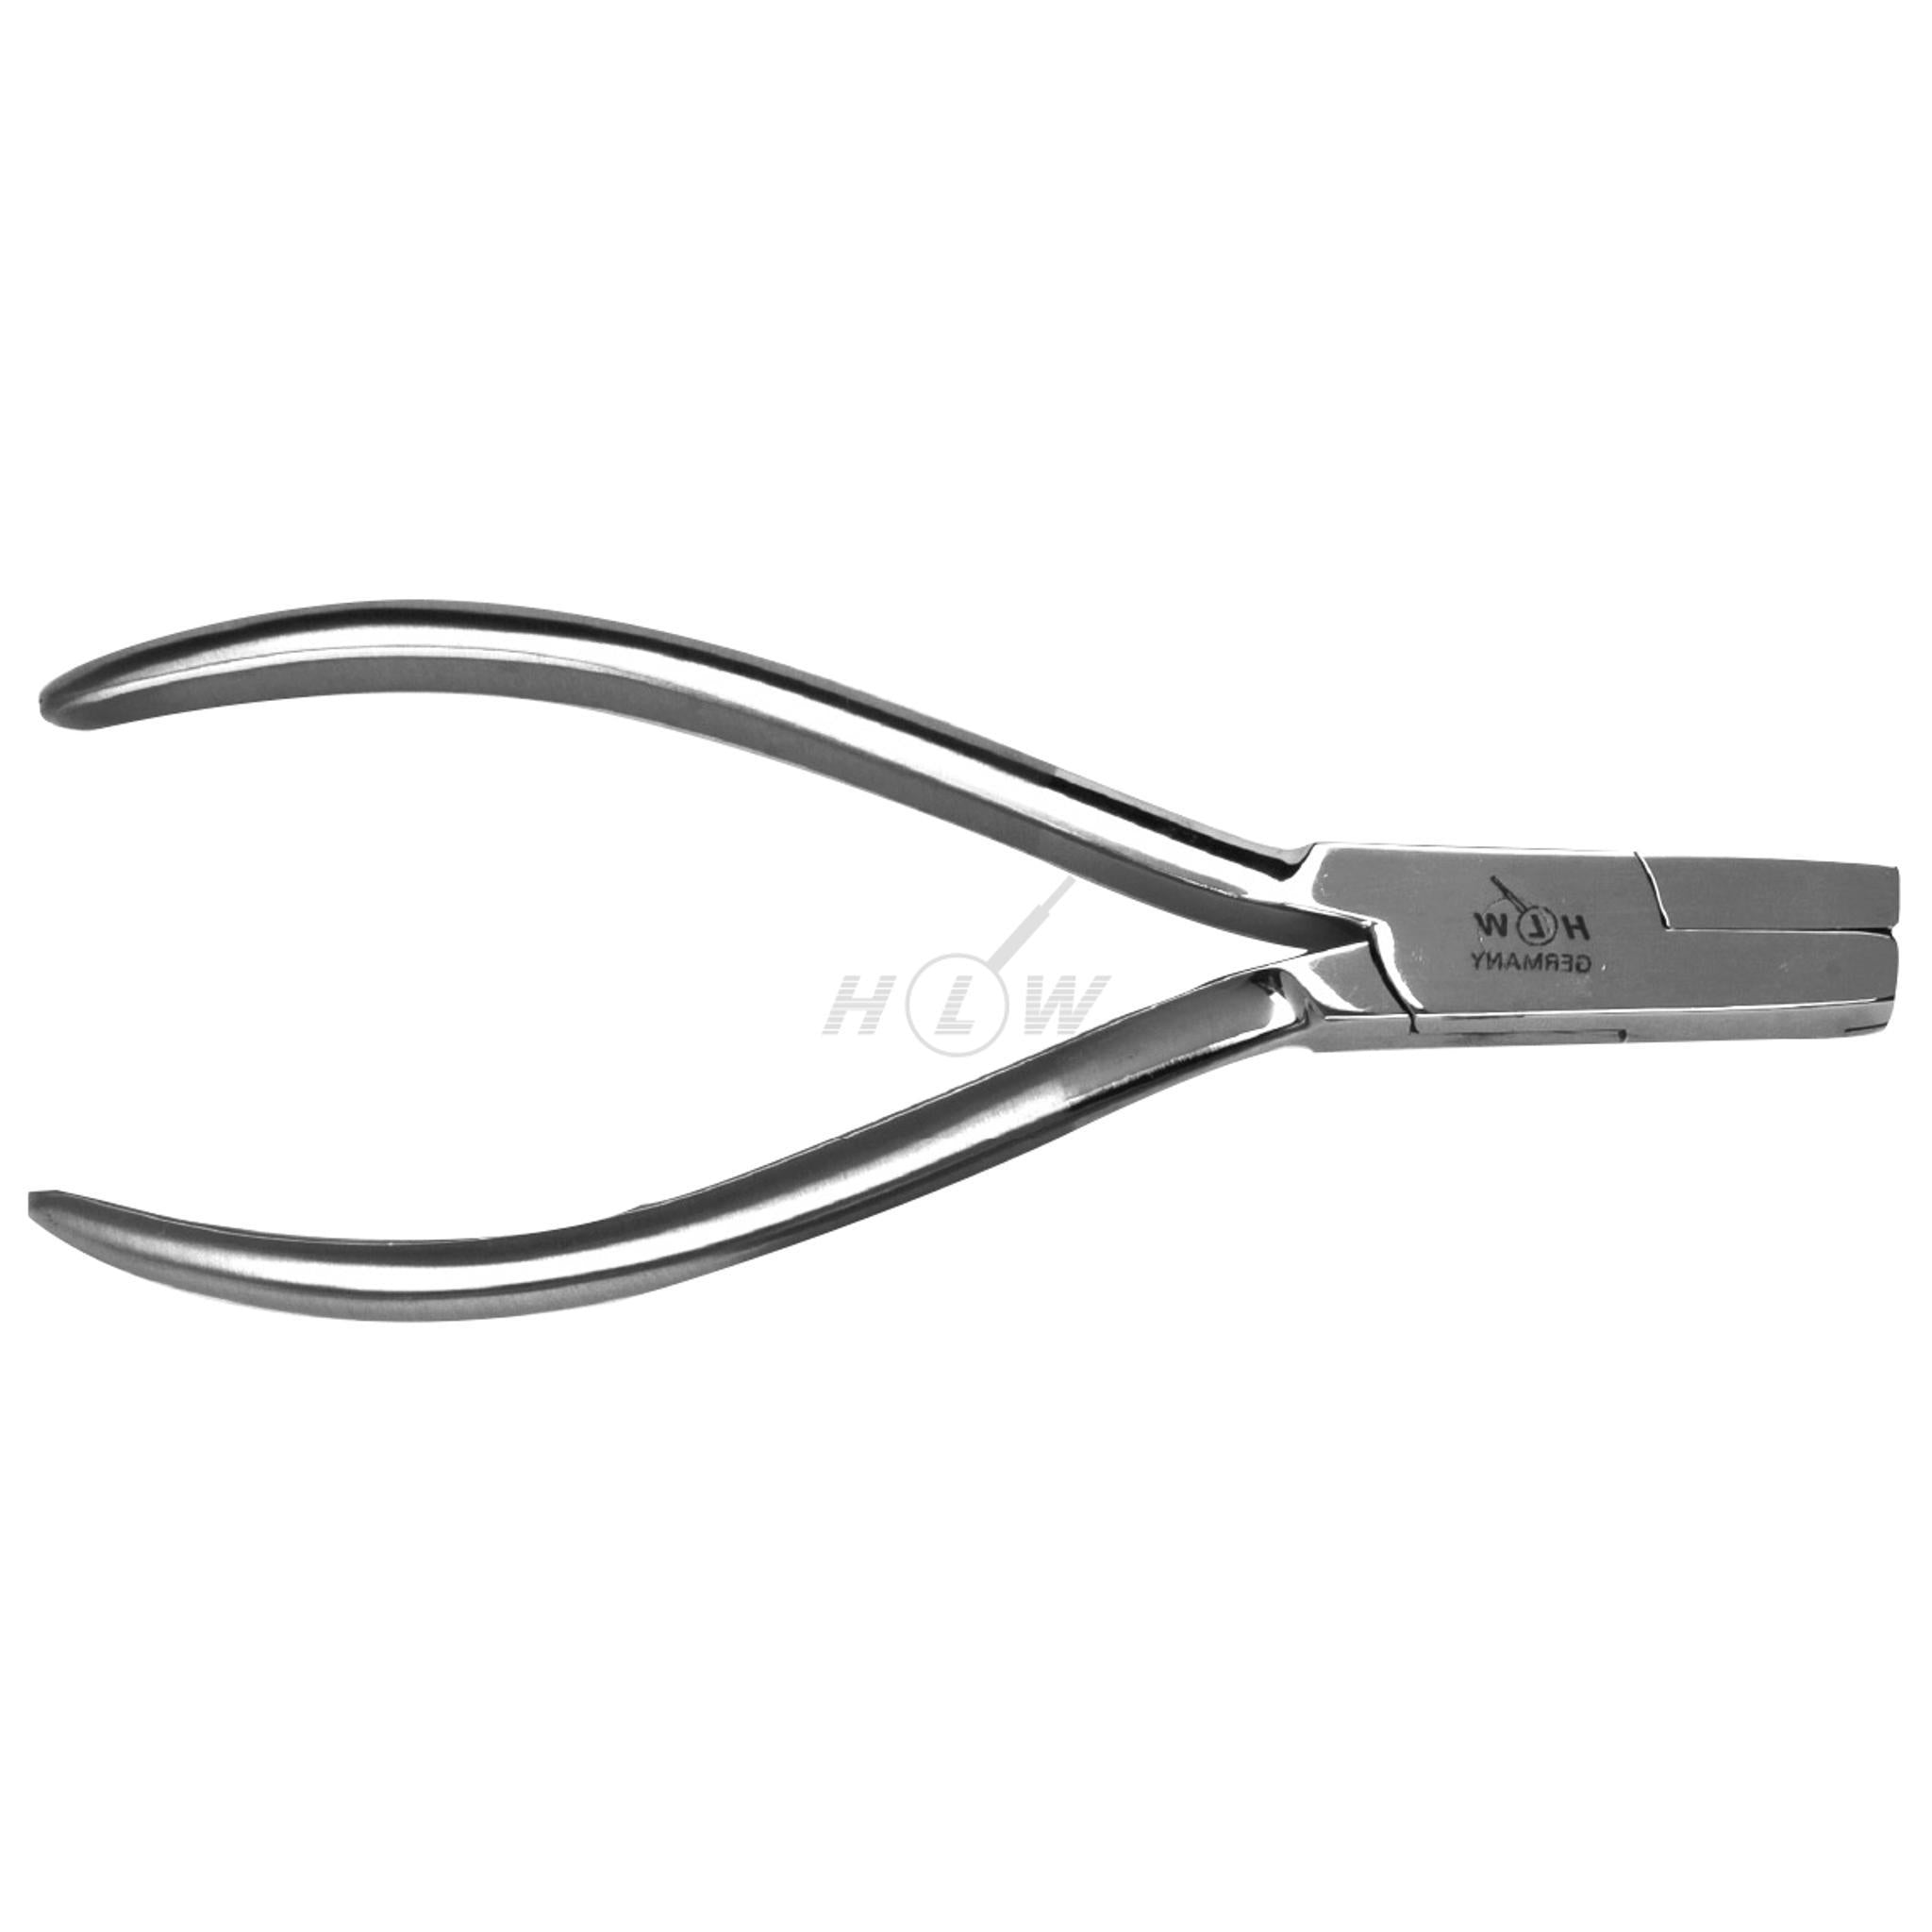 Loop bending pliers 12.5cm Nance max. 0.7mm